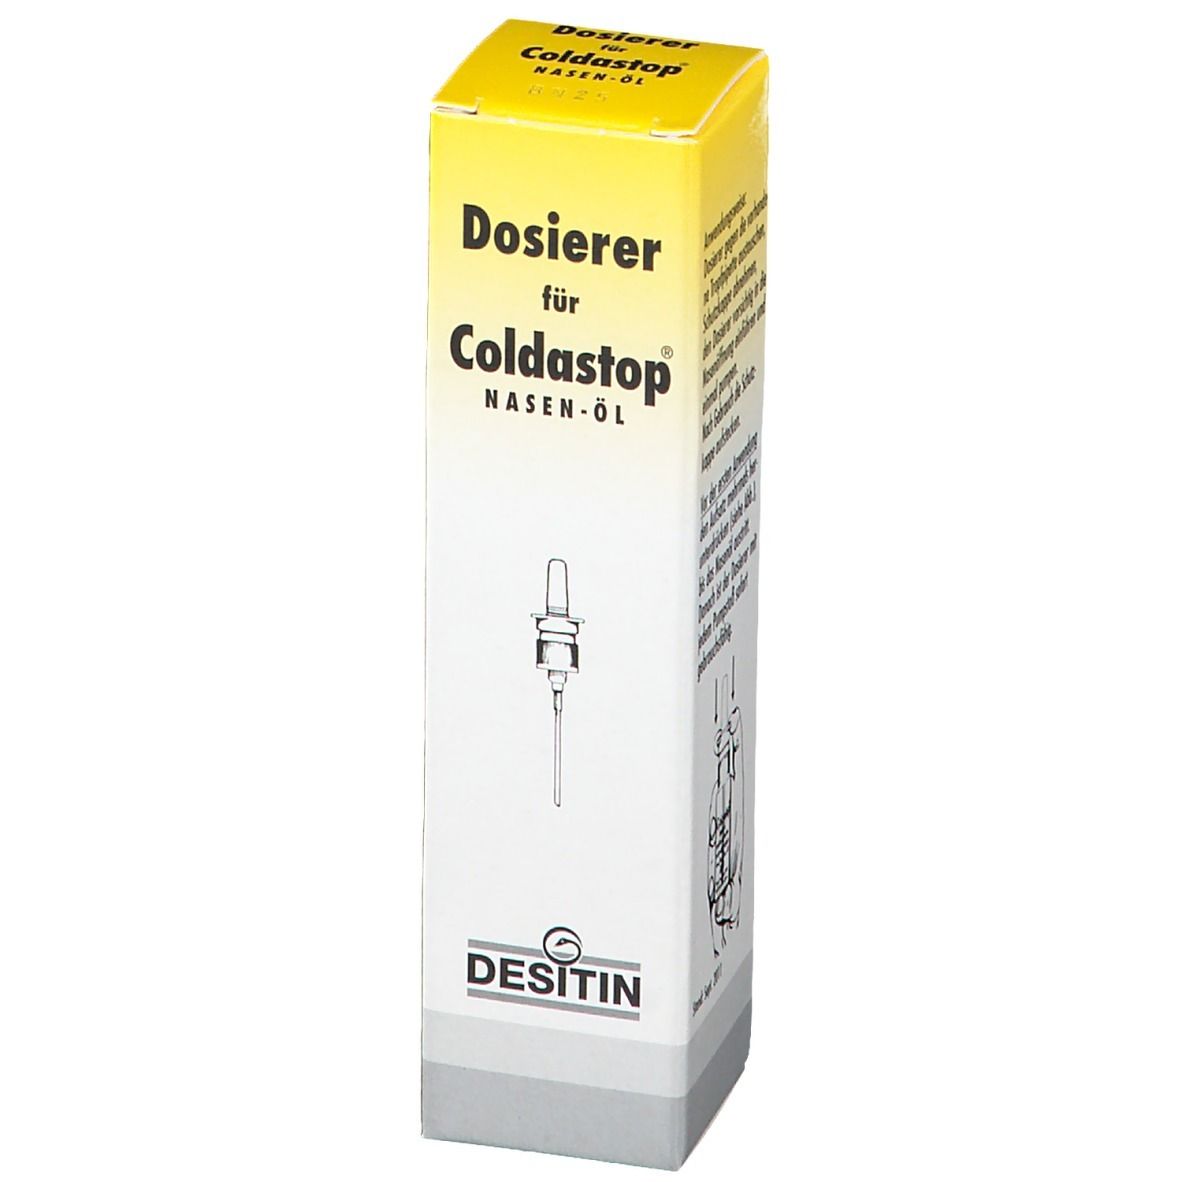 Coldastop® Nasen-Öl Dosierer ohne Inhalt